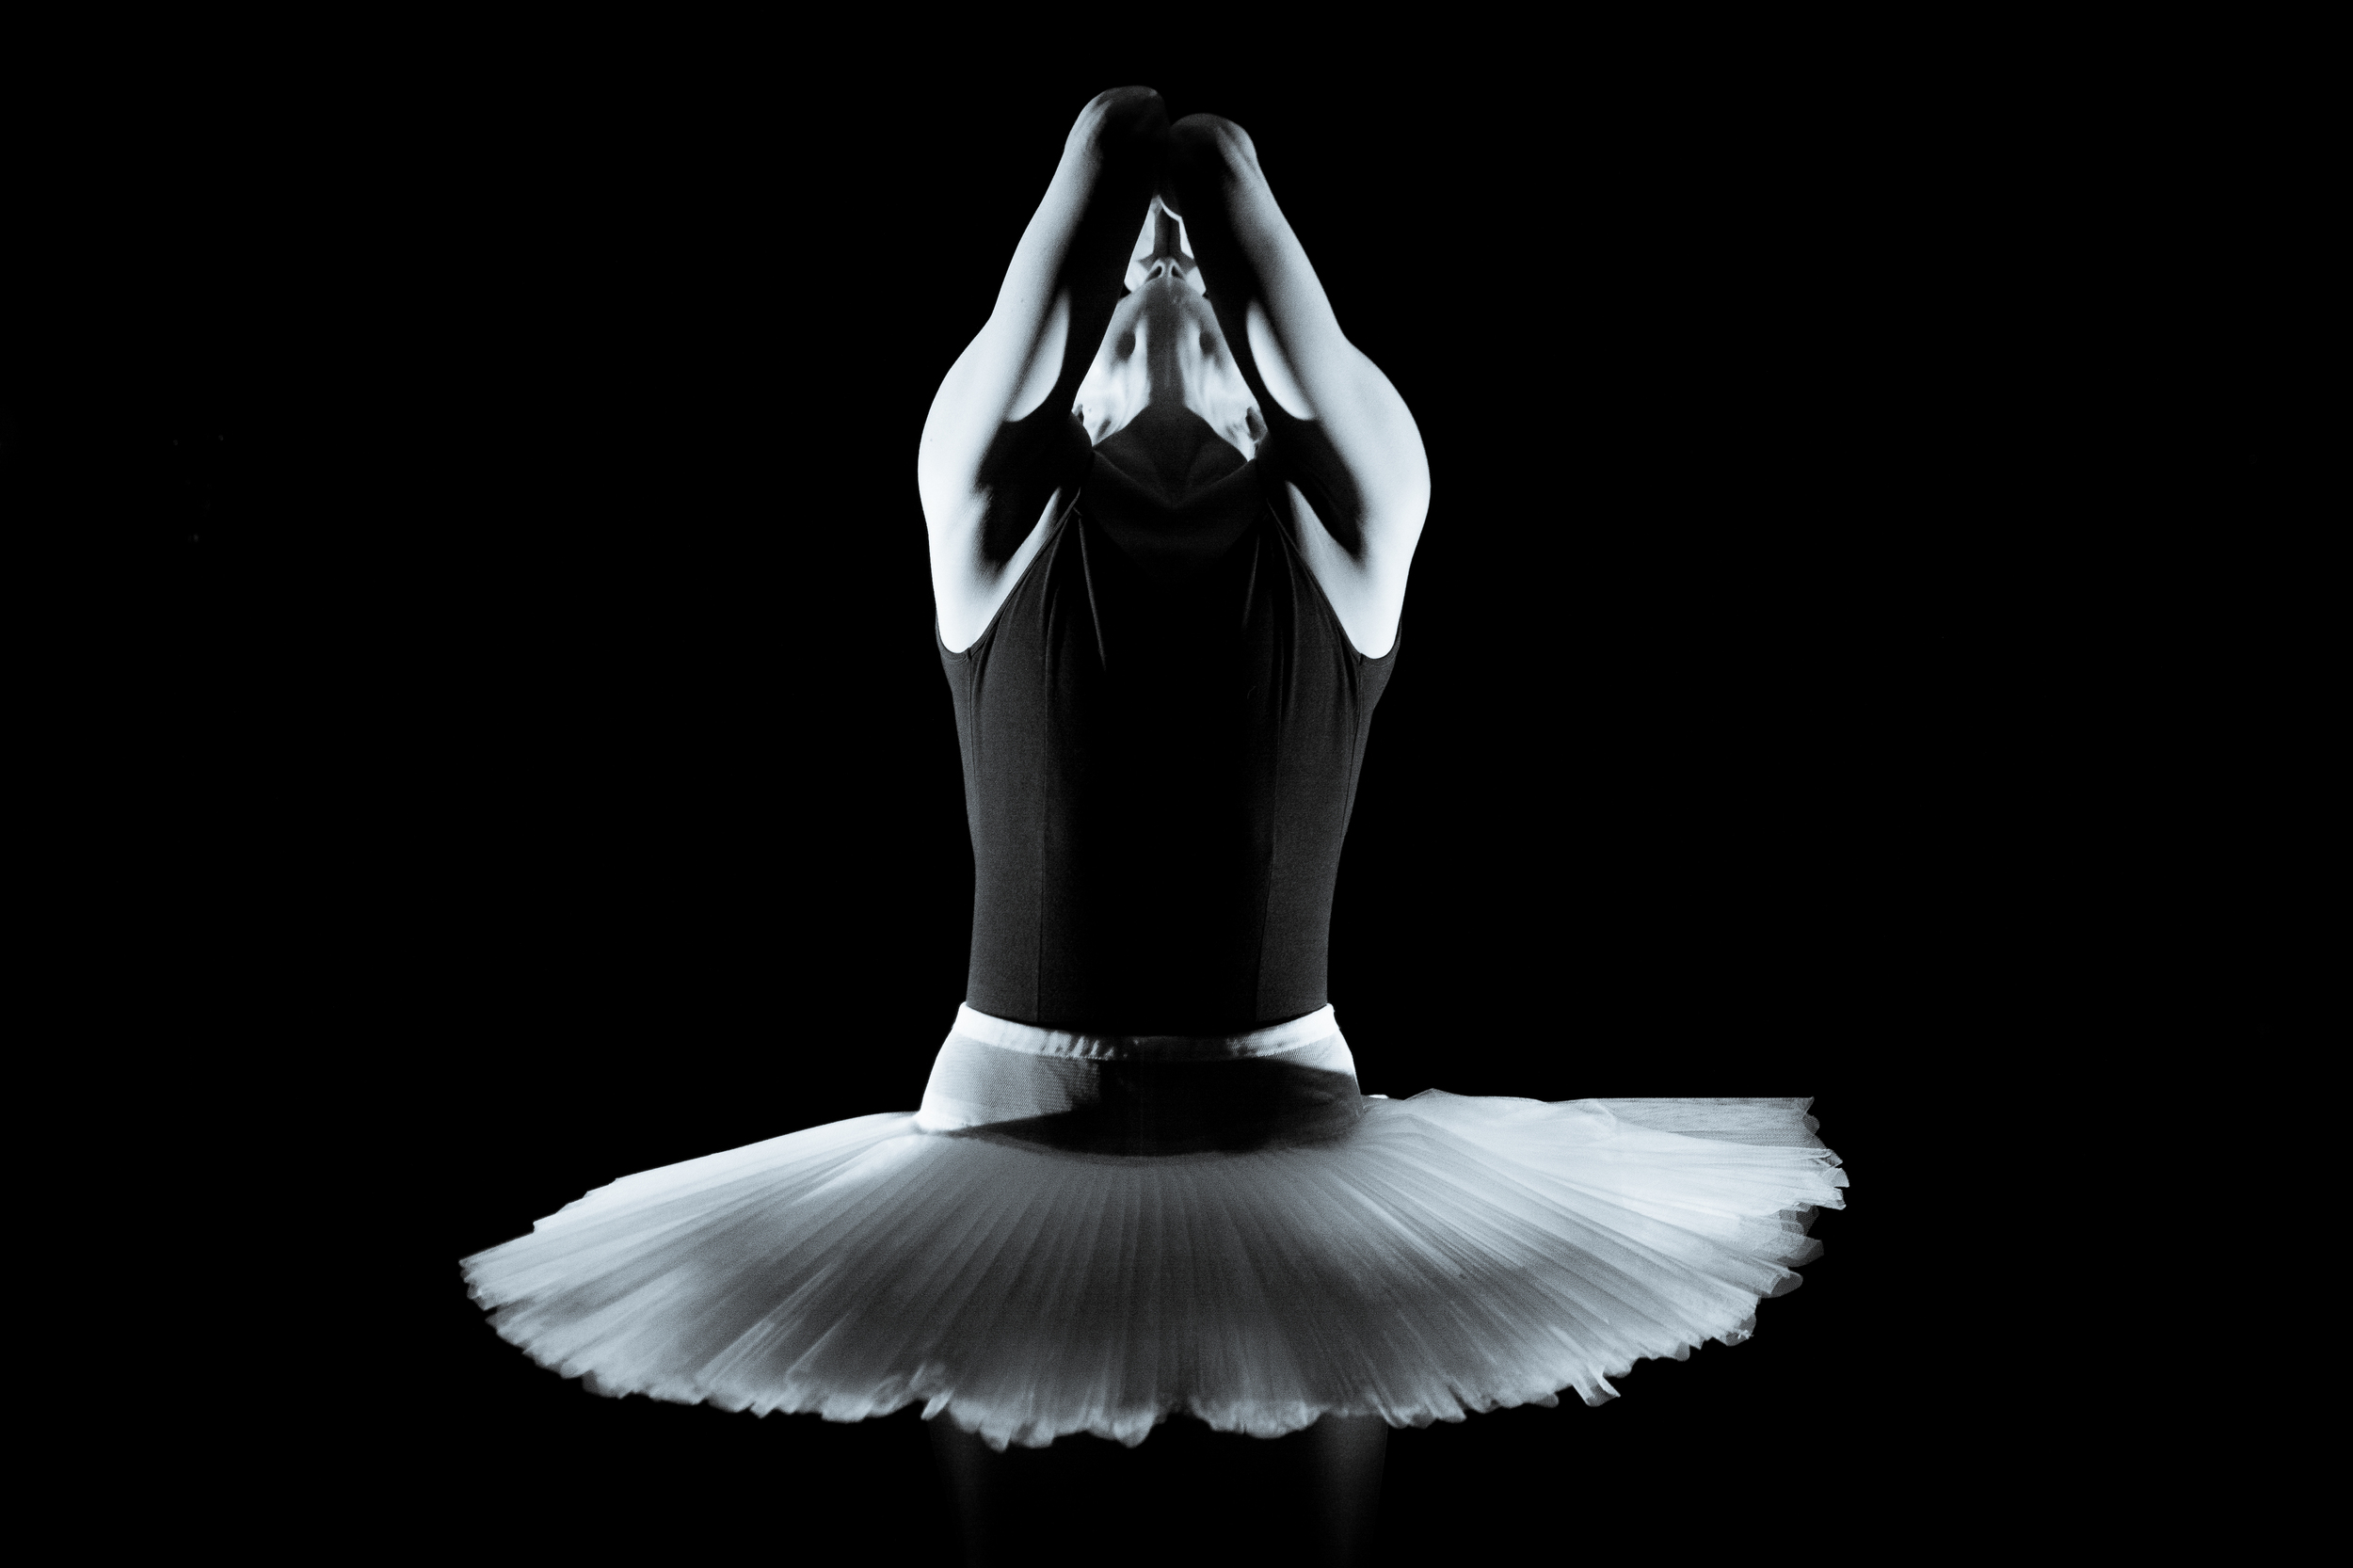 Monochrome Ballerina - Andrea Miltnerová - Fri 6 February 2015 -1173.jpg